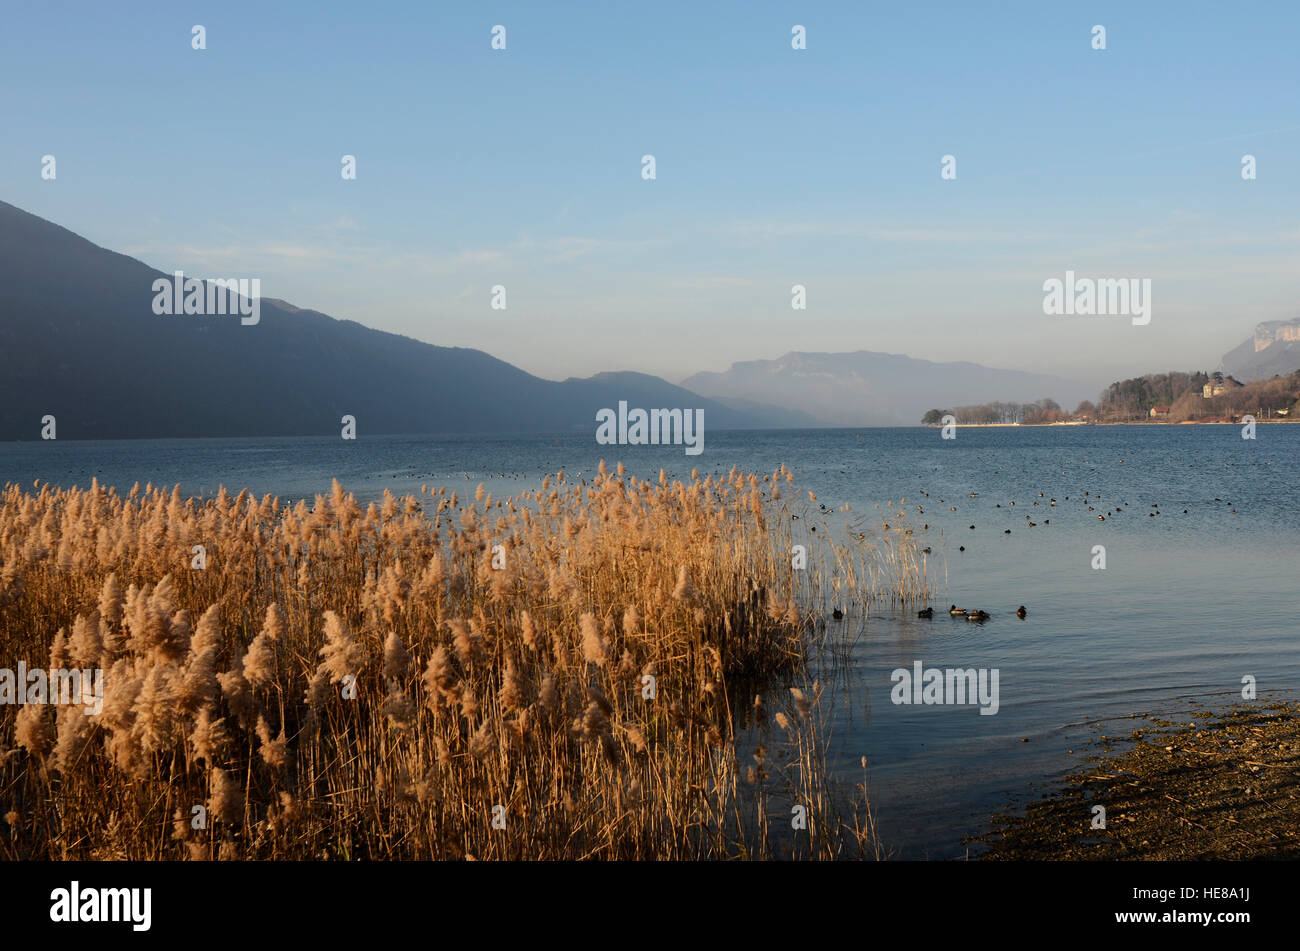 Lac du bourget Banque de photographies et d'images à haute résolution -  Alamy